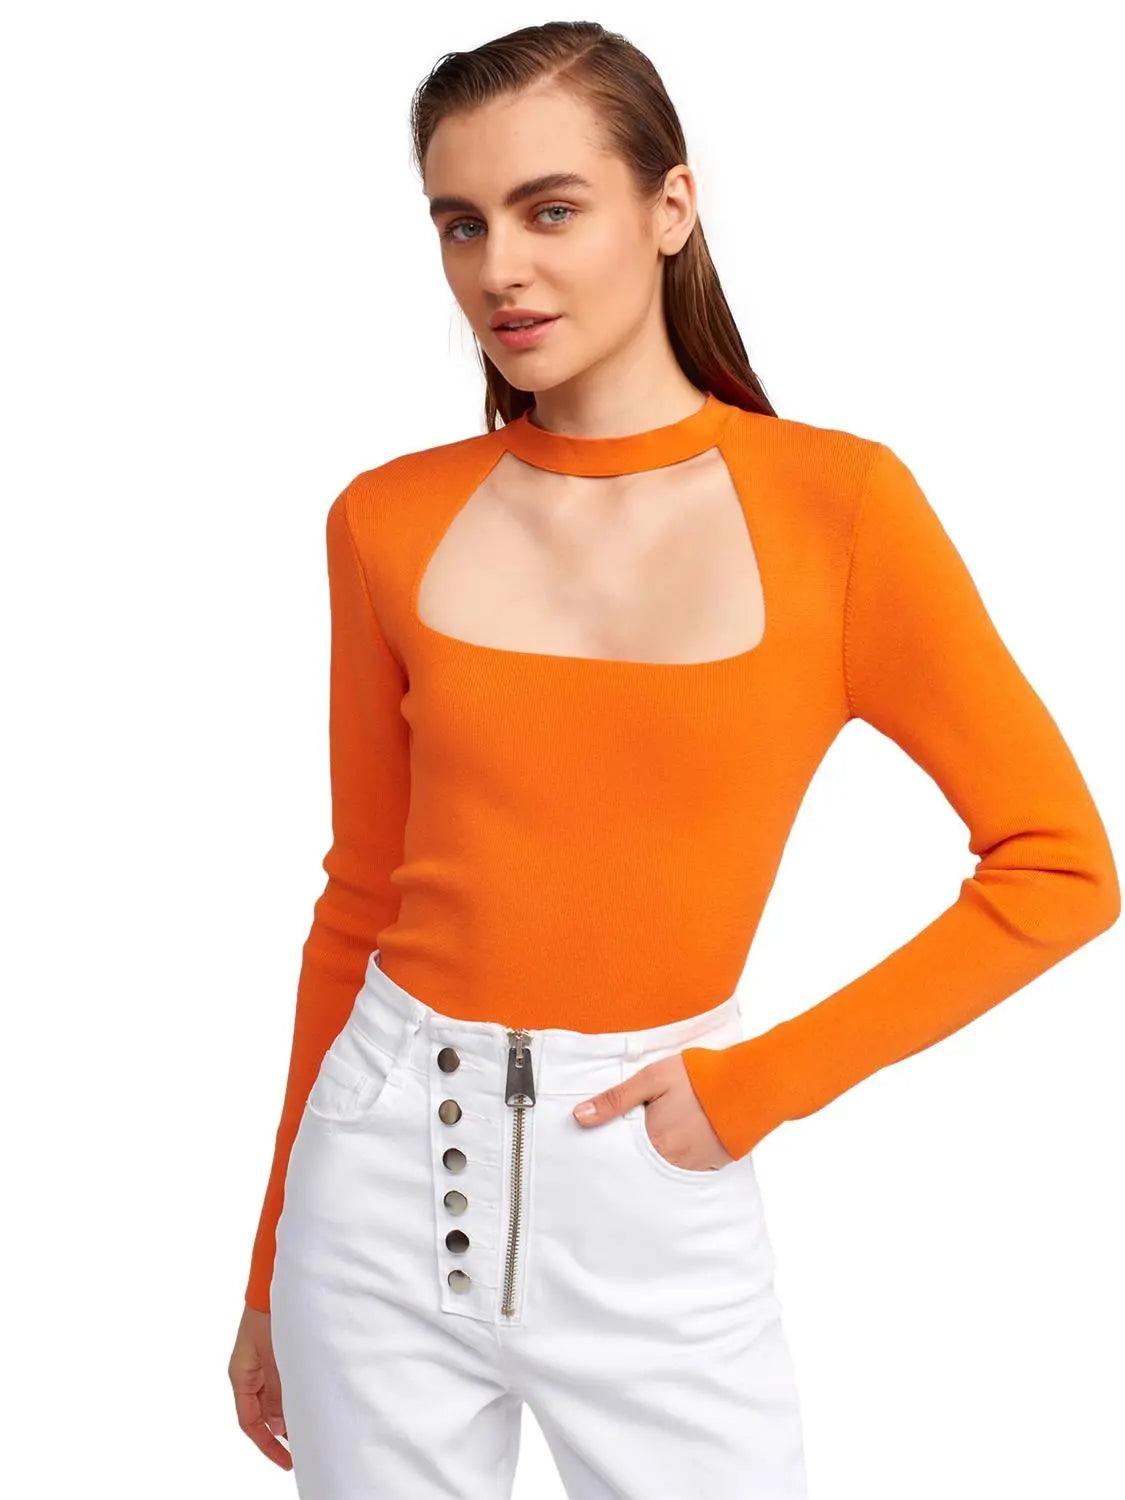 Zippered Sweater Orange / One Size ZEFASH